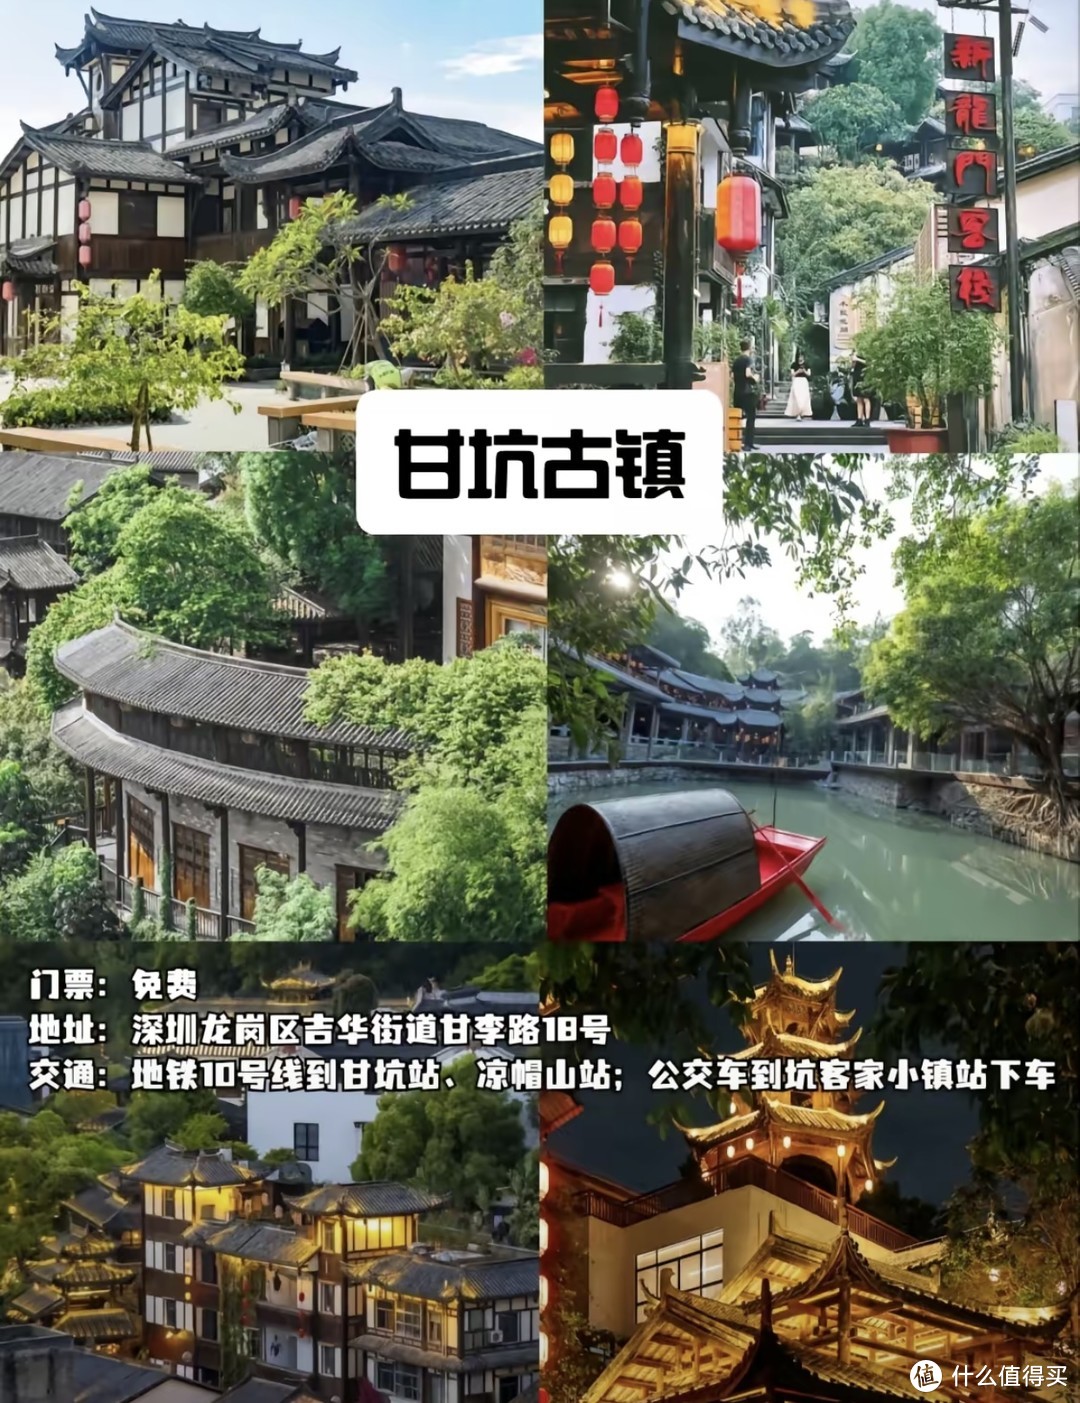 分享深圳大都市9个免门票的旅游景点，国庆有想到深圳的值友们请收藏！